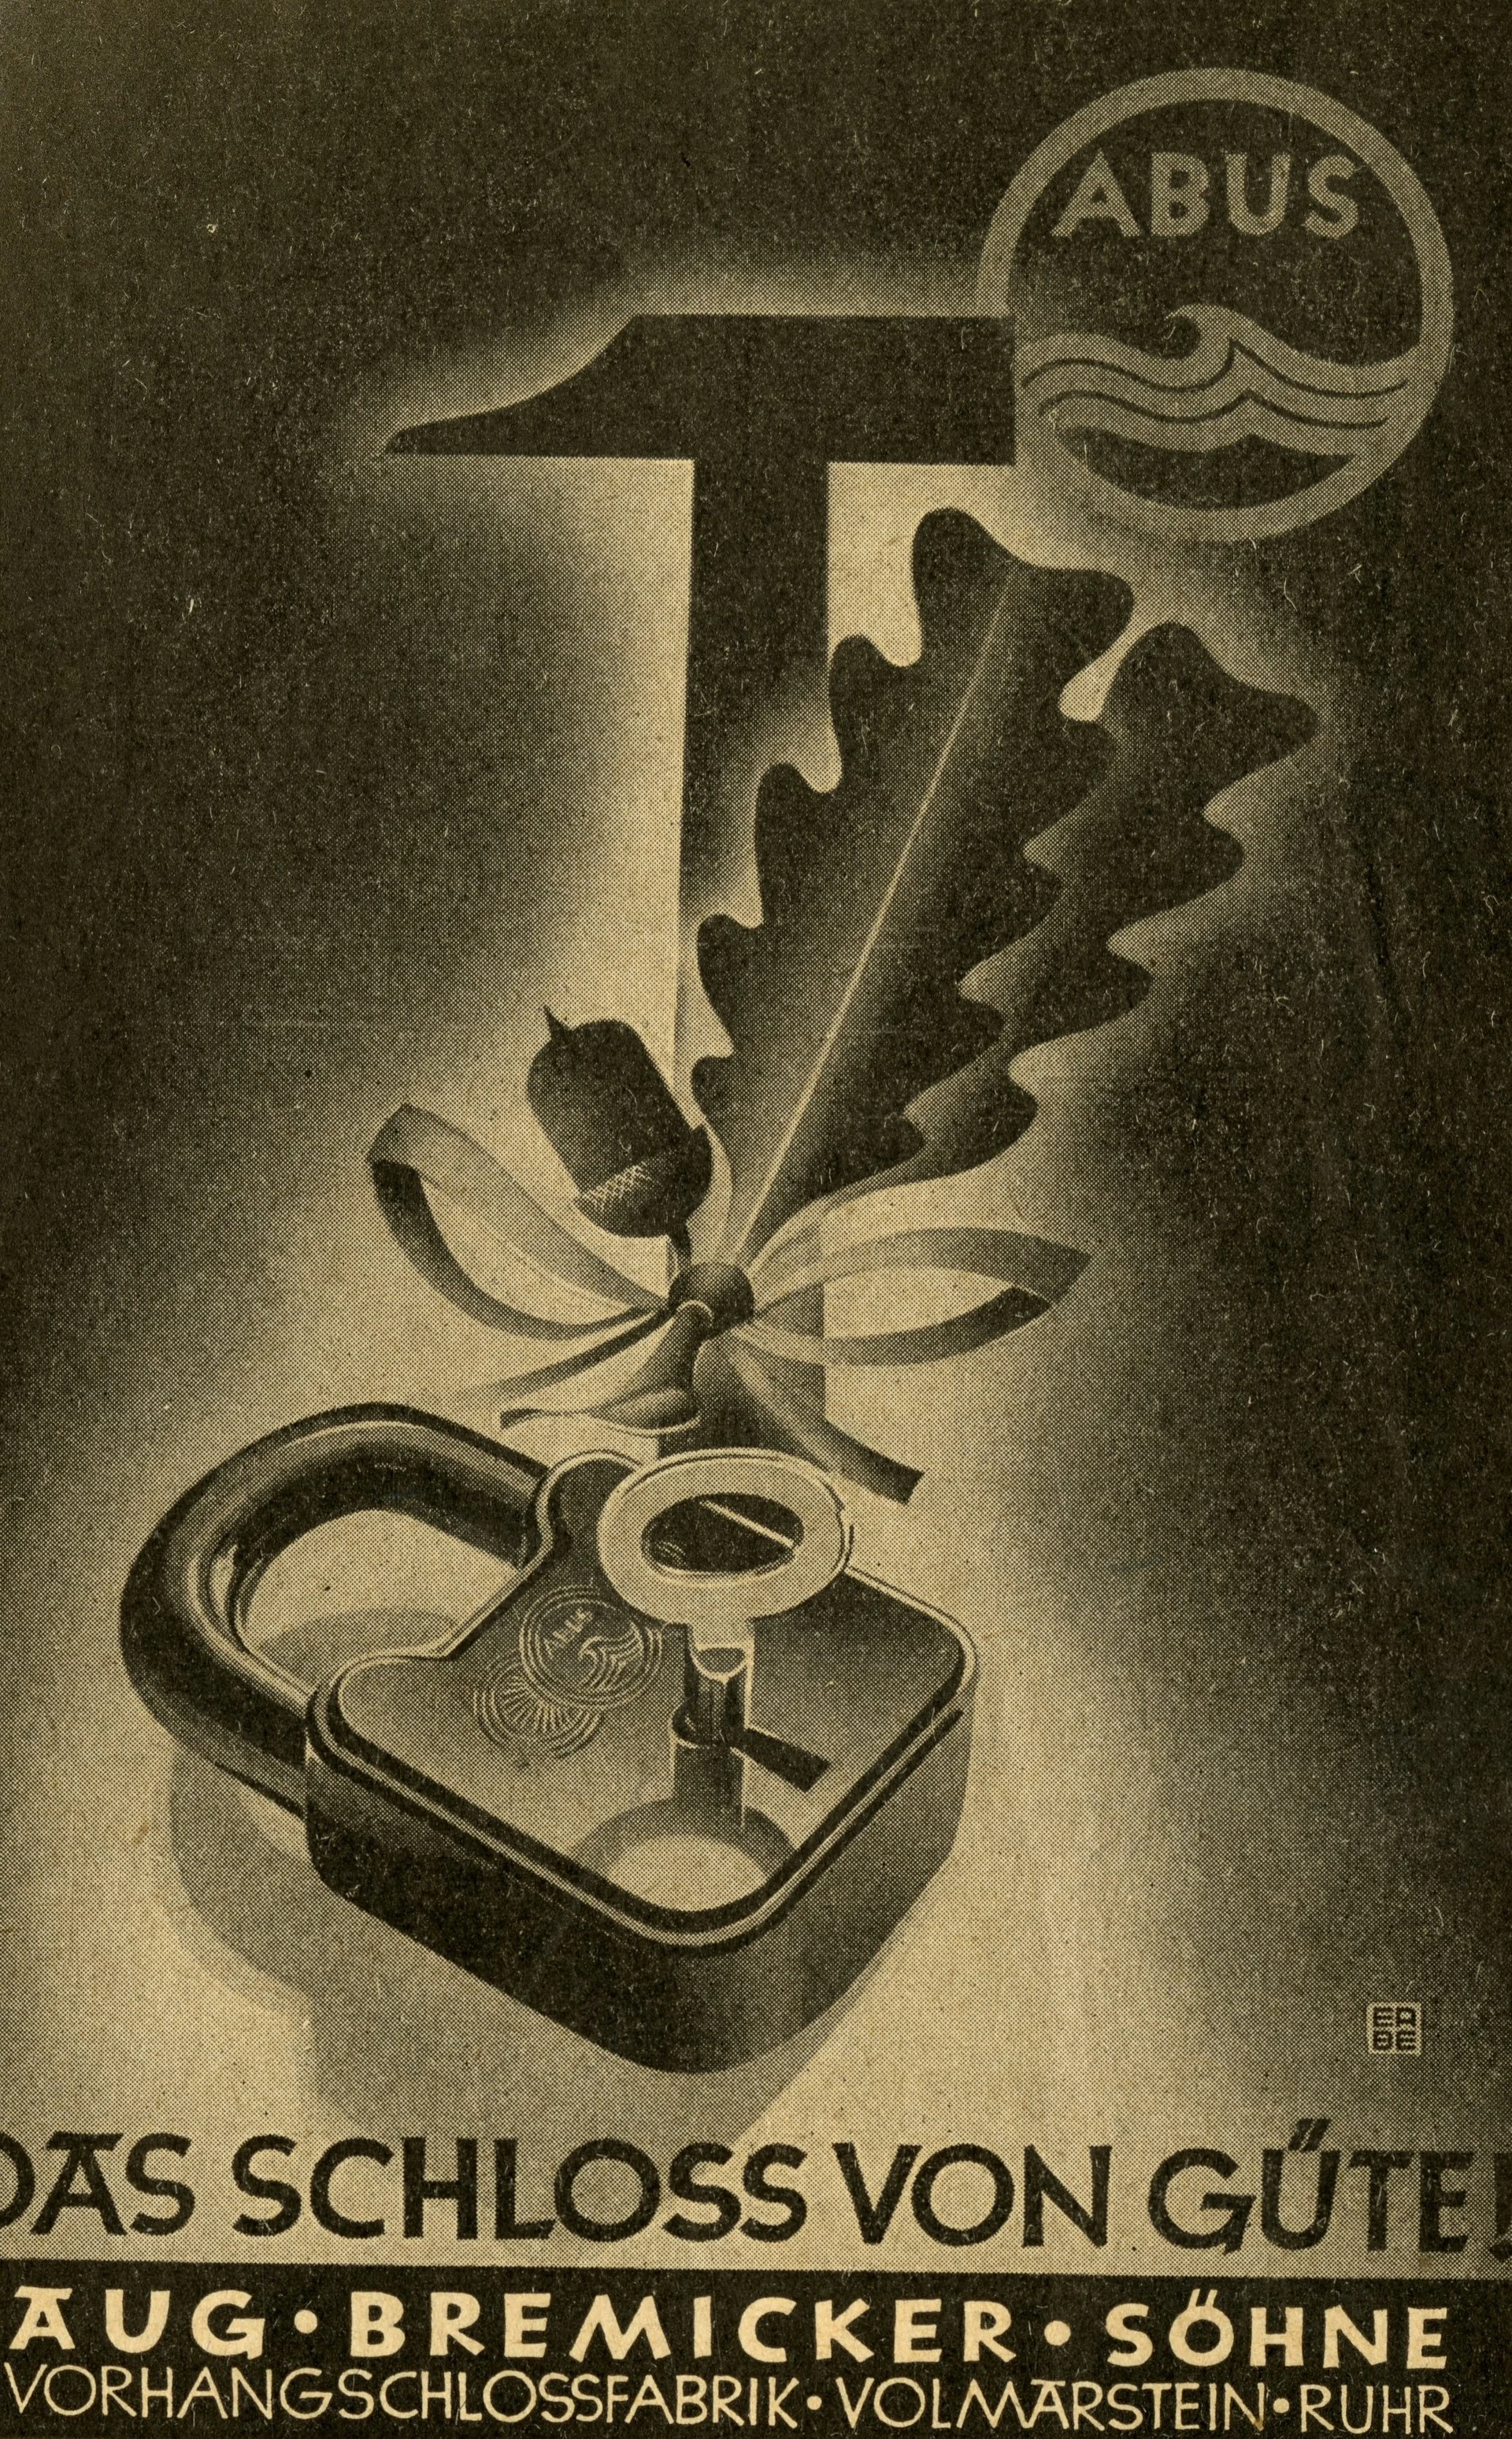 Plakat w ciemnym kolorze przedstawiający kłódkę wraz z gałązką żołędzia i młotkiem, z napisem "Das Schloss von Güte!" © ABUS